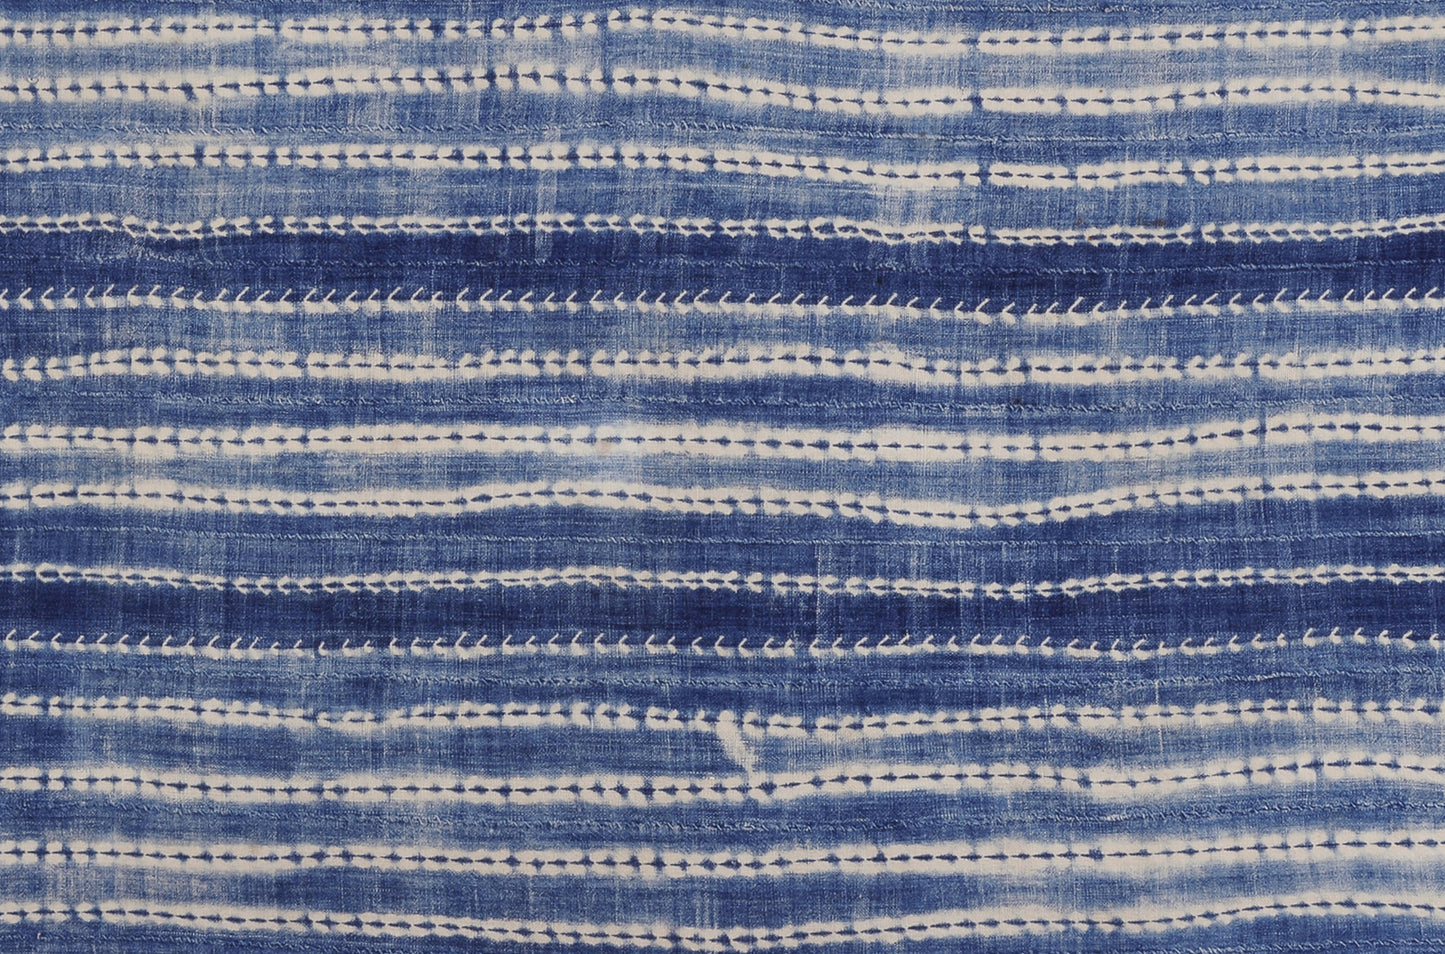 Настоящая винтажная ткань ручной работы цвета индиго из Буркина-Фасо, племя Моси.